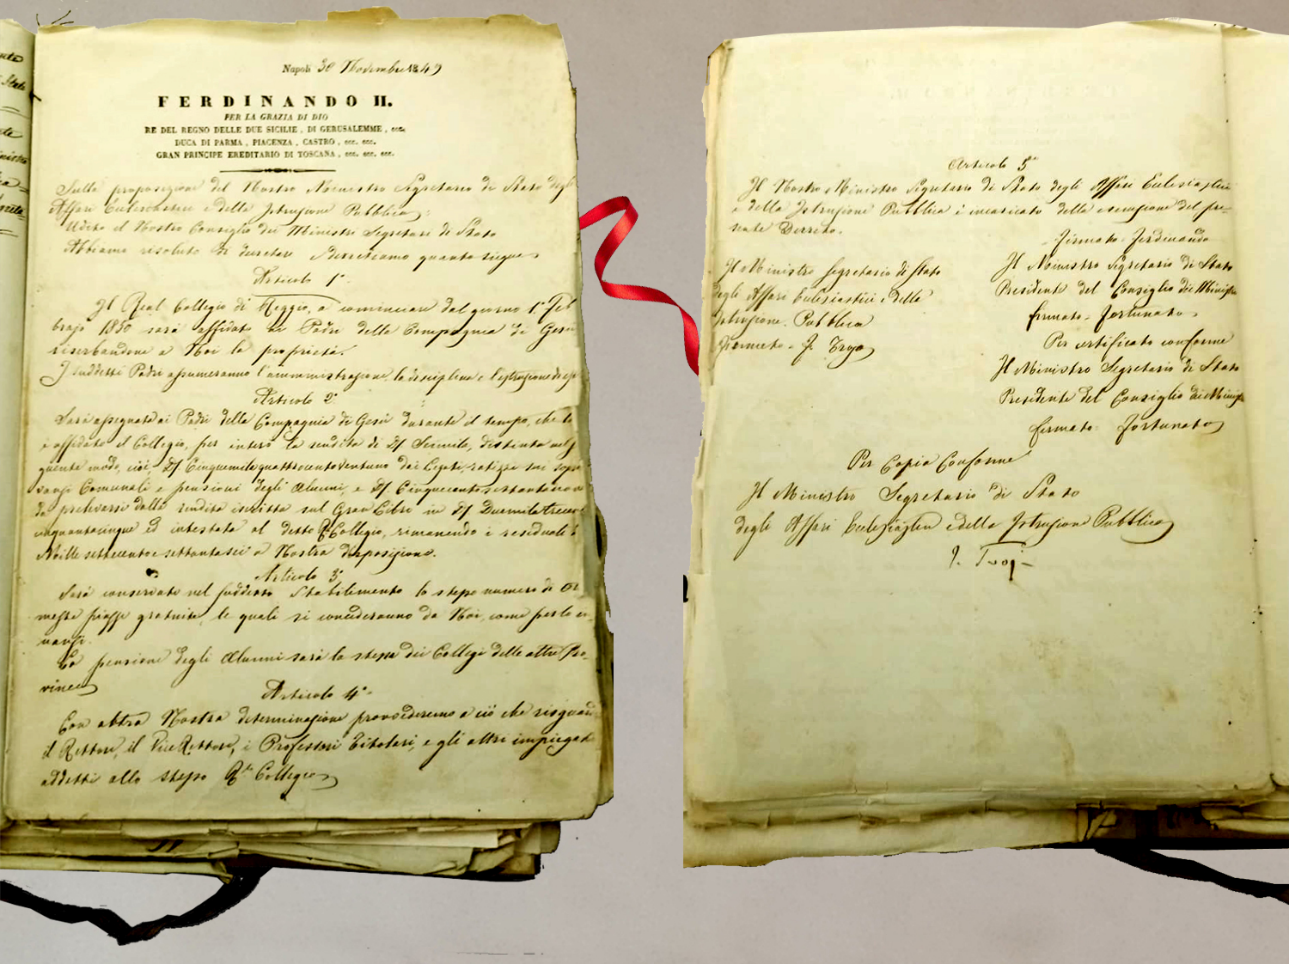 30 novembre 1849 - Decreto di affidamento del Real Collegio ai RR.PP. Gesuiti